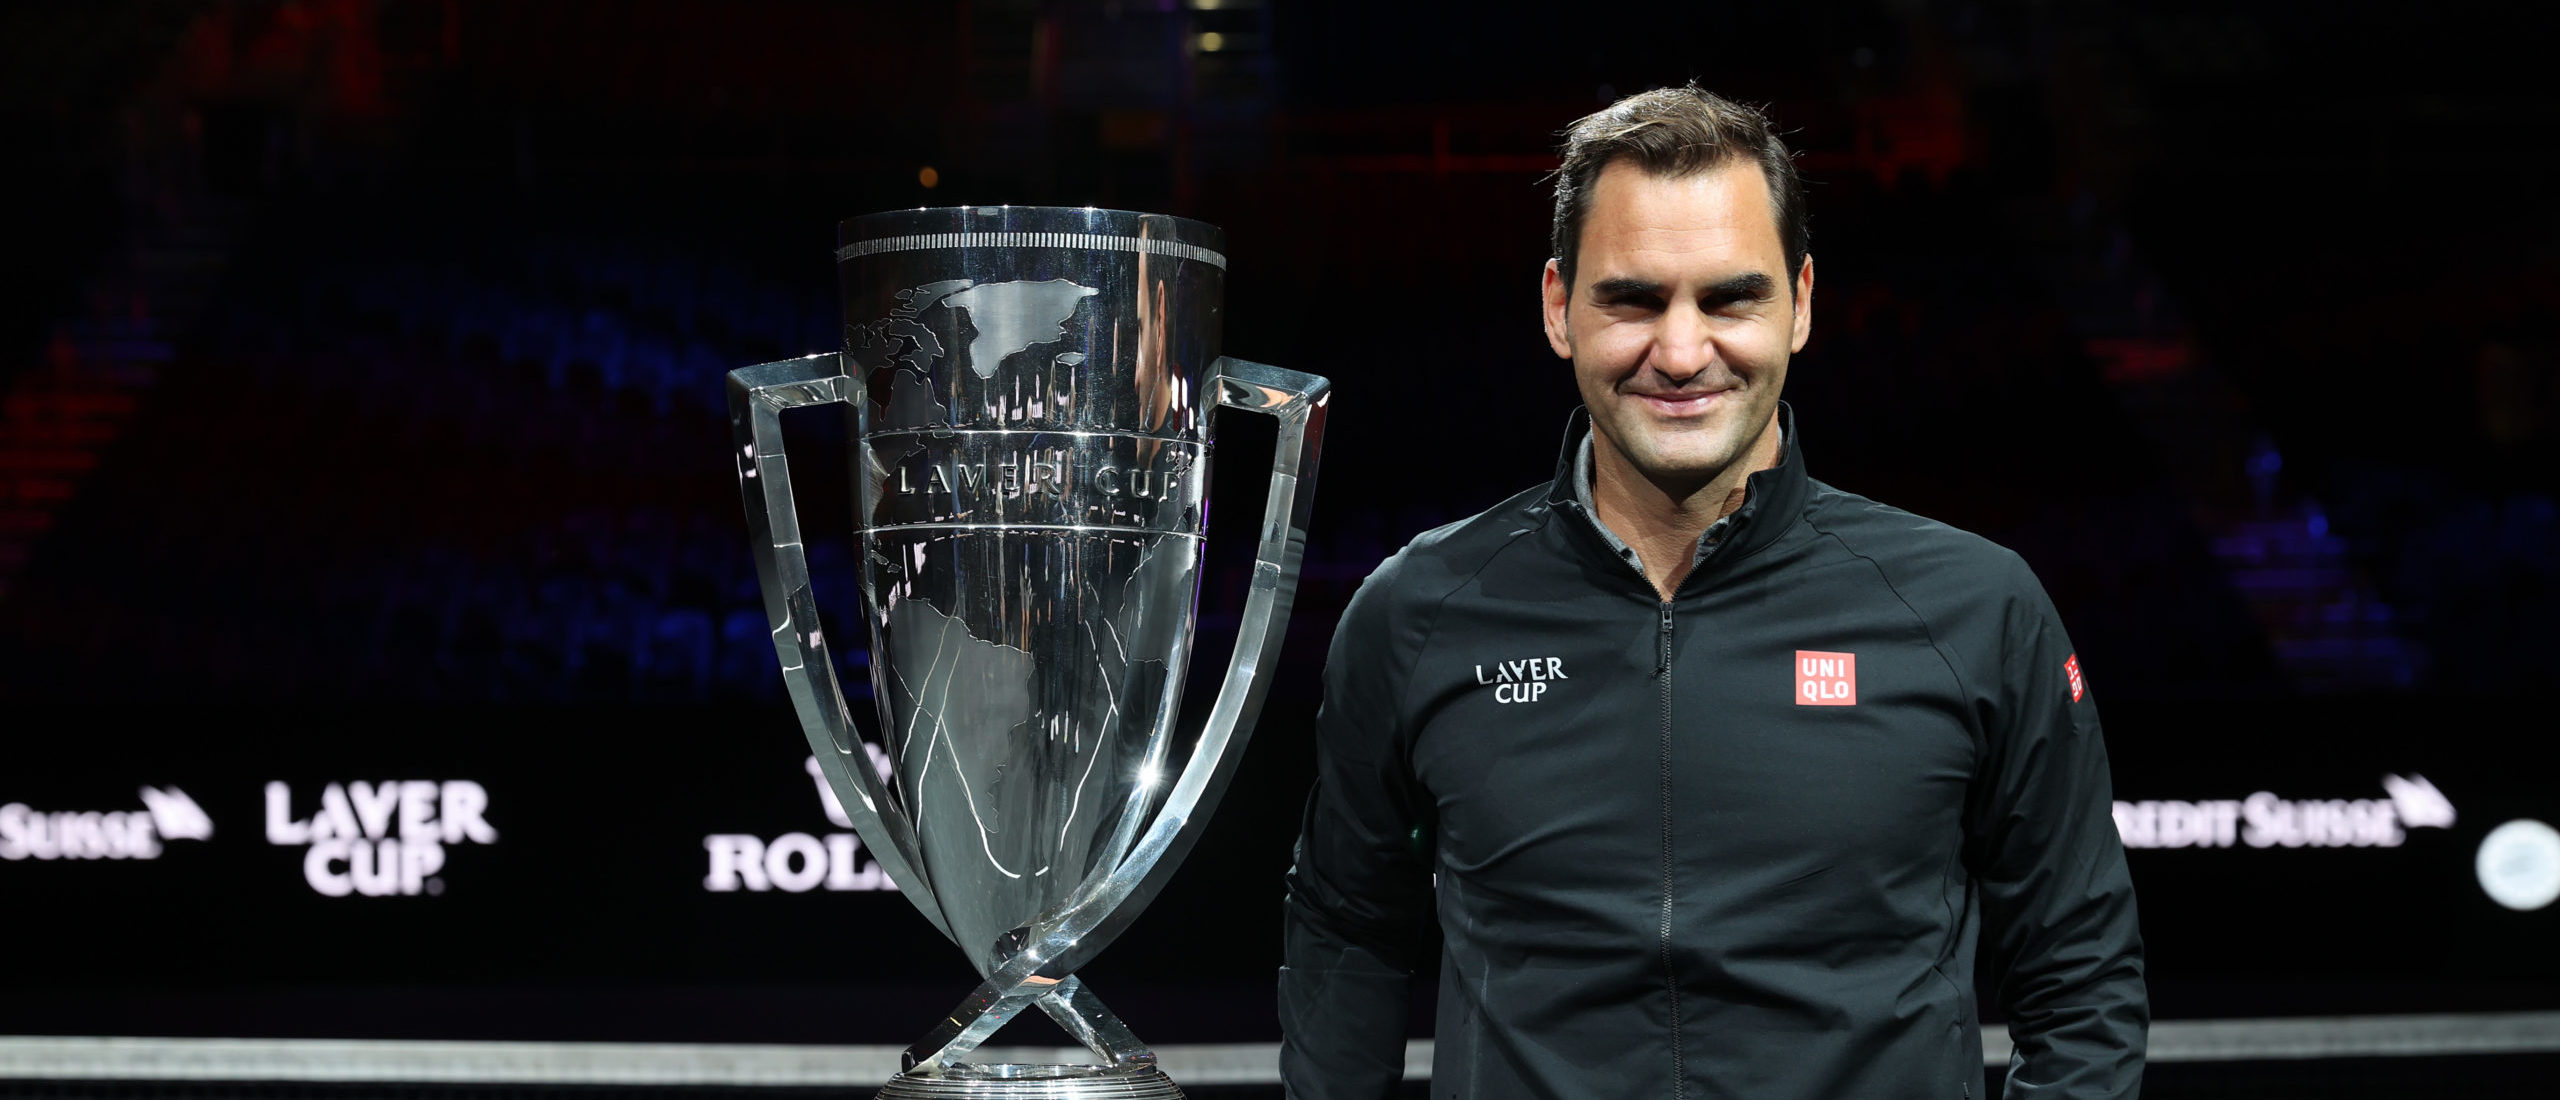 Roger Federer Announces Retirement